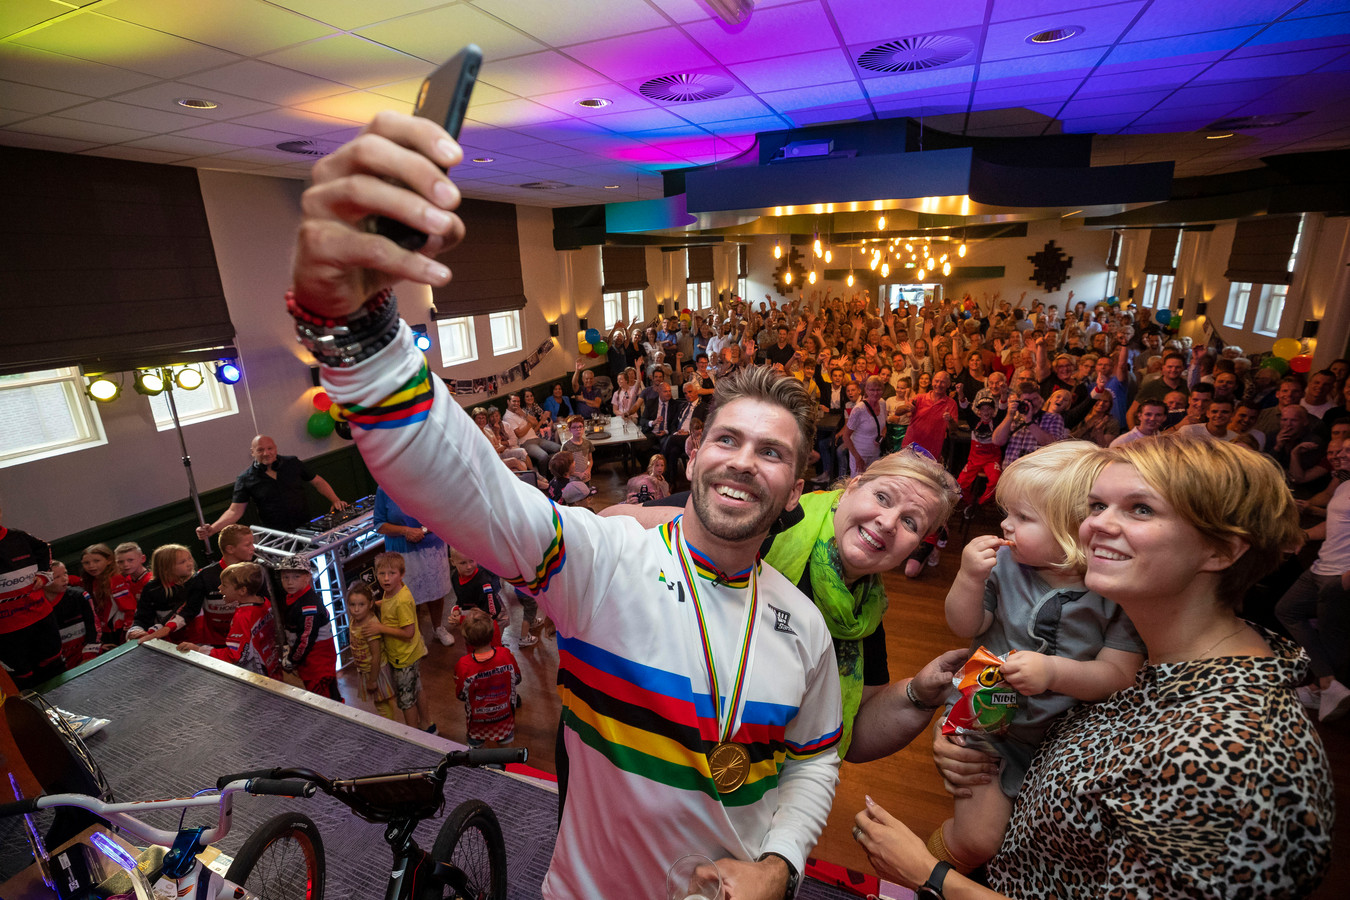 Na het behalen van de wereldtitel BMX in 2019 werd Twan van Gendt gehuldigd in dorpshuis De Boxhof, in zijn woonplaats Velddriel.